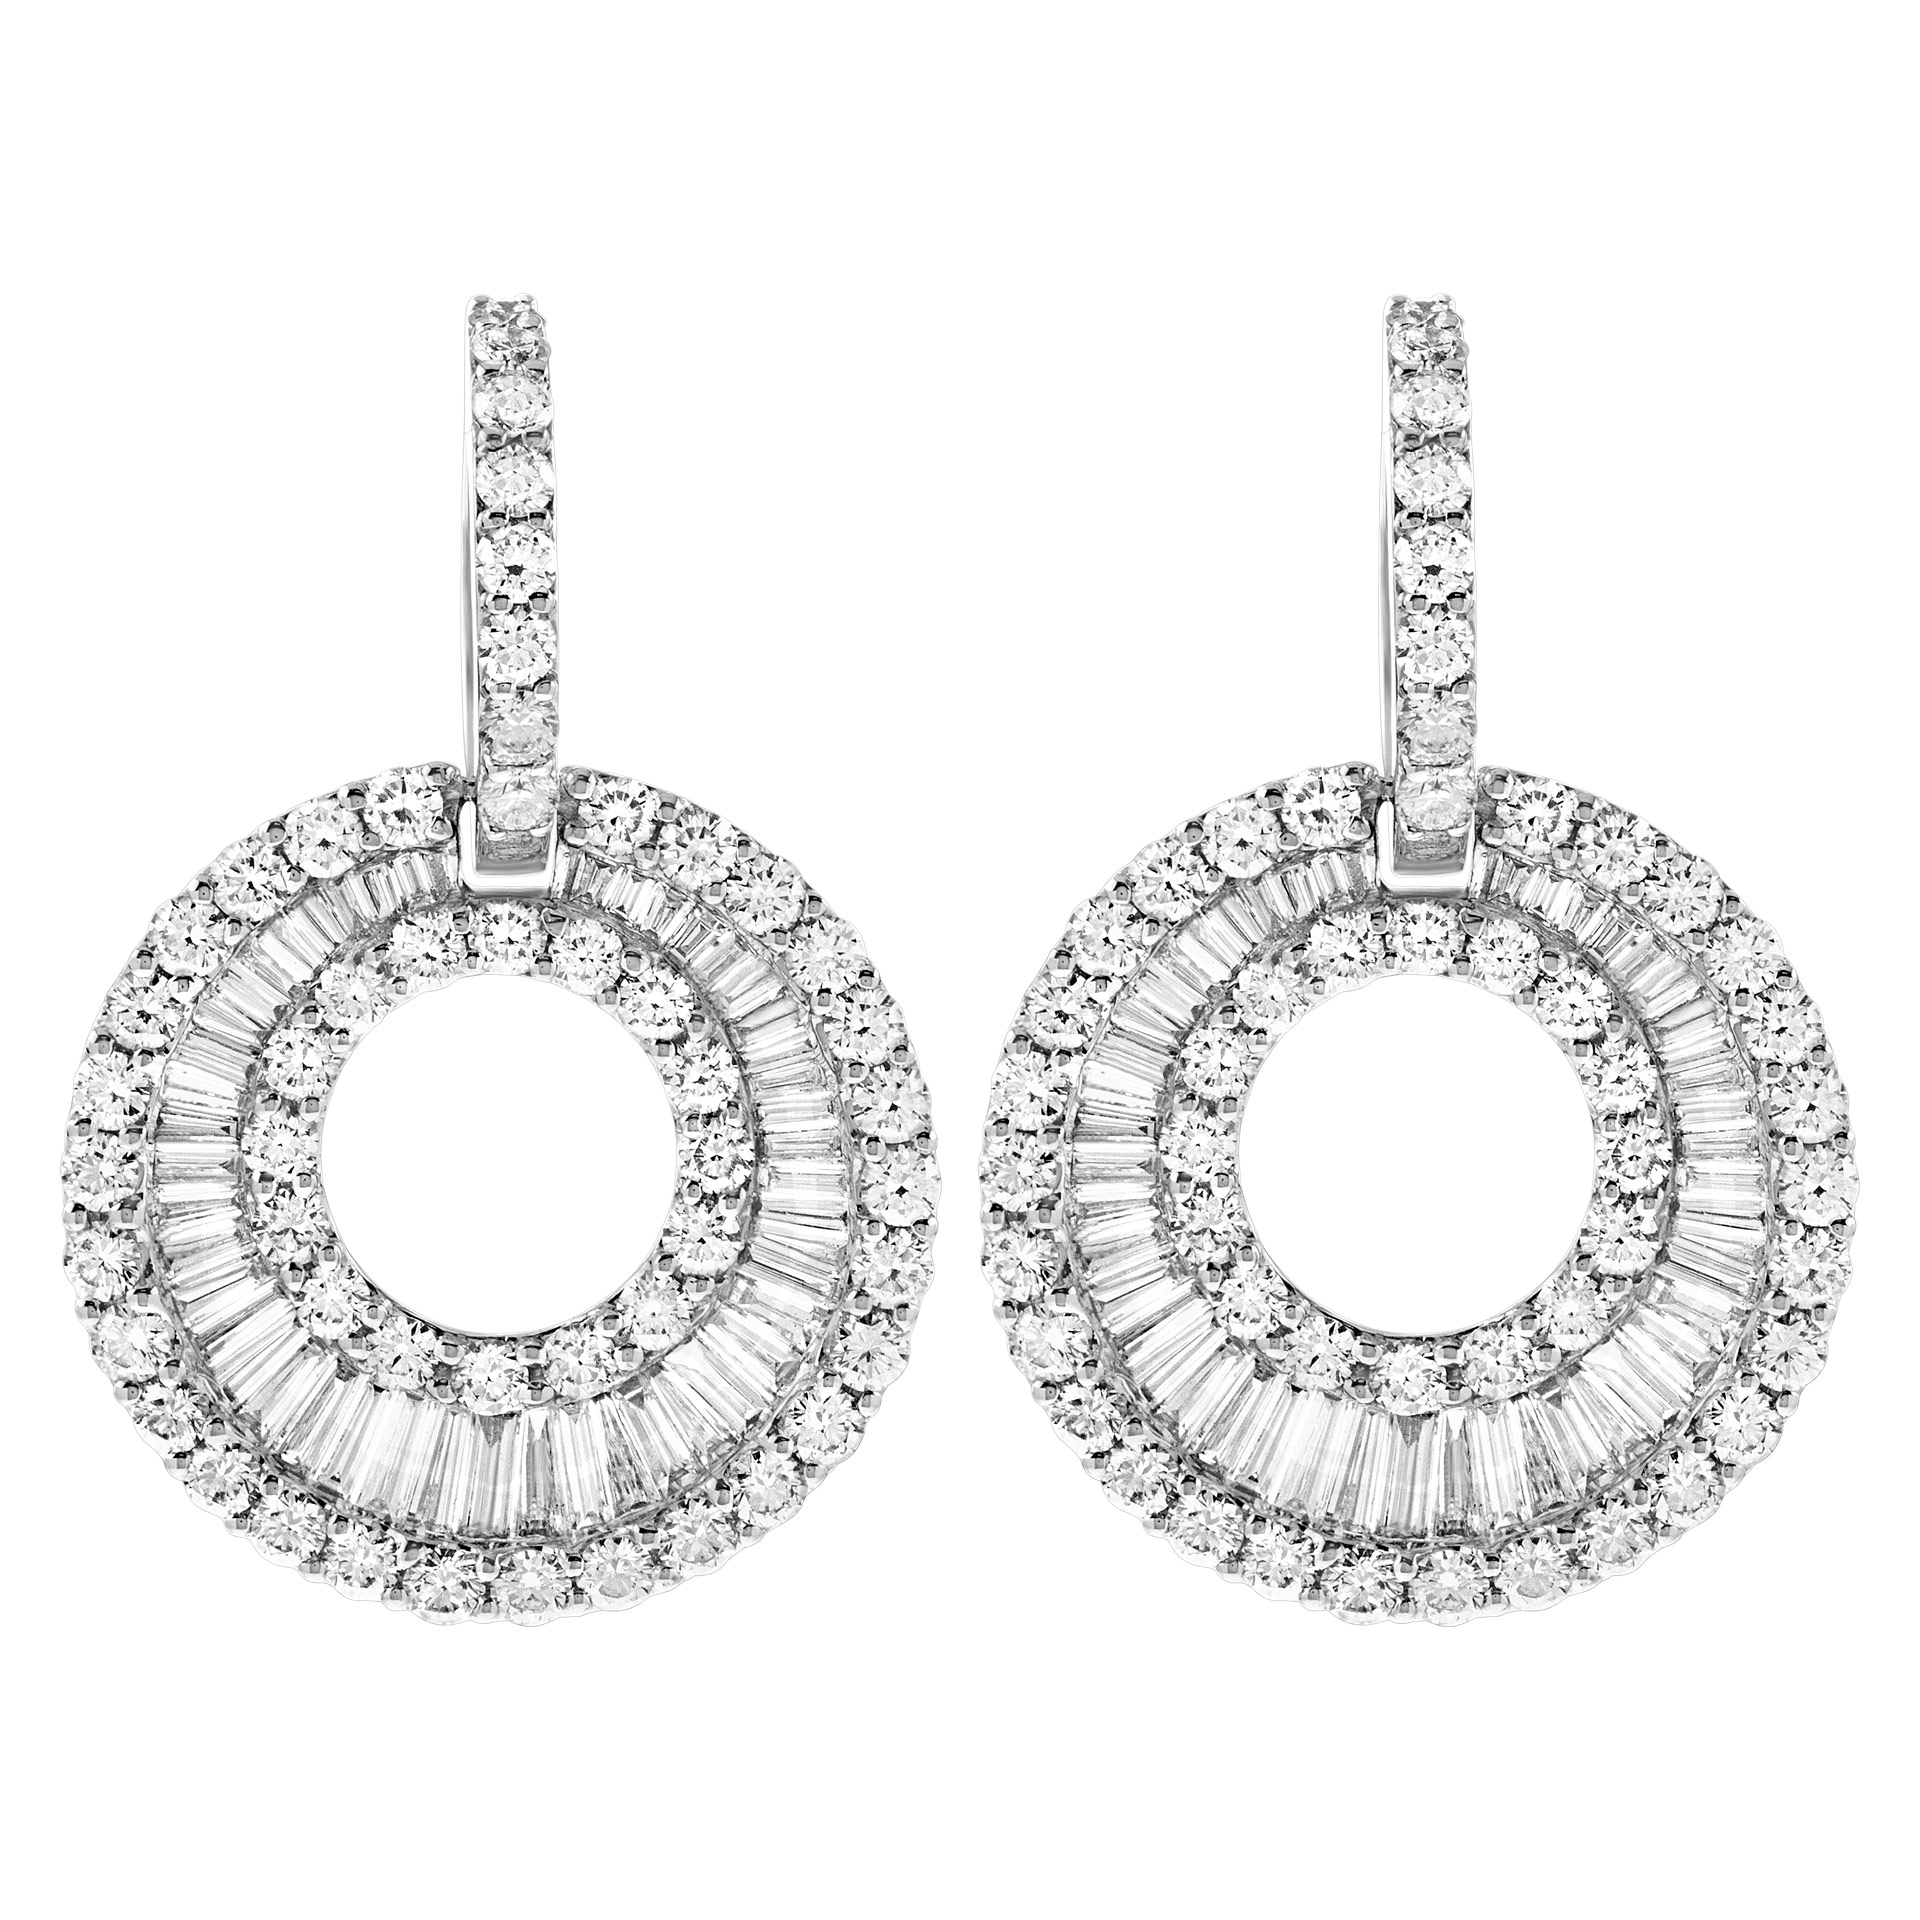 Sparkling diamond earrings in 18k white gold image 1